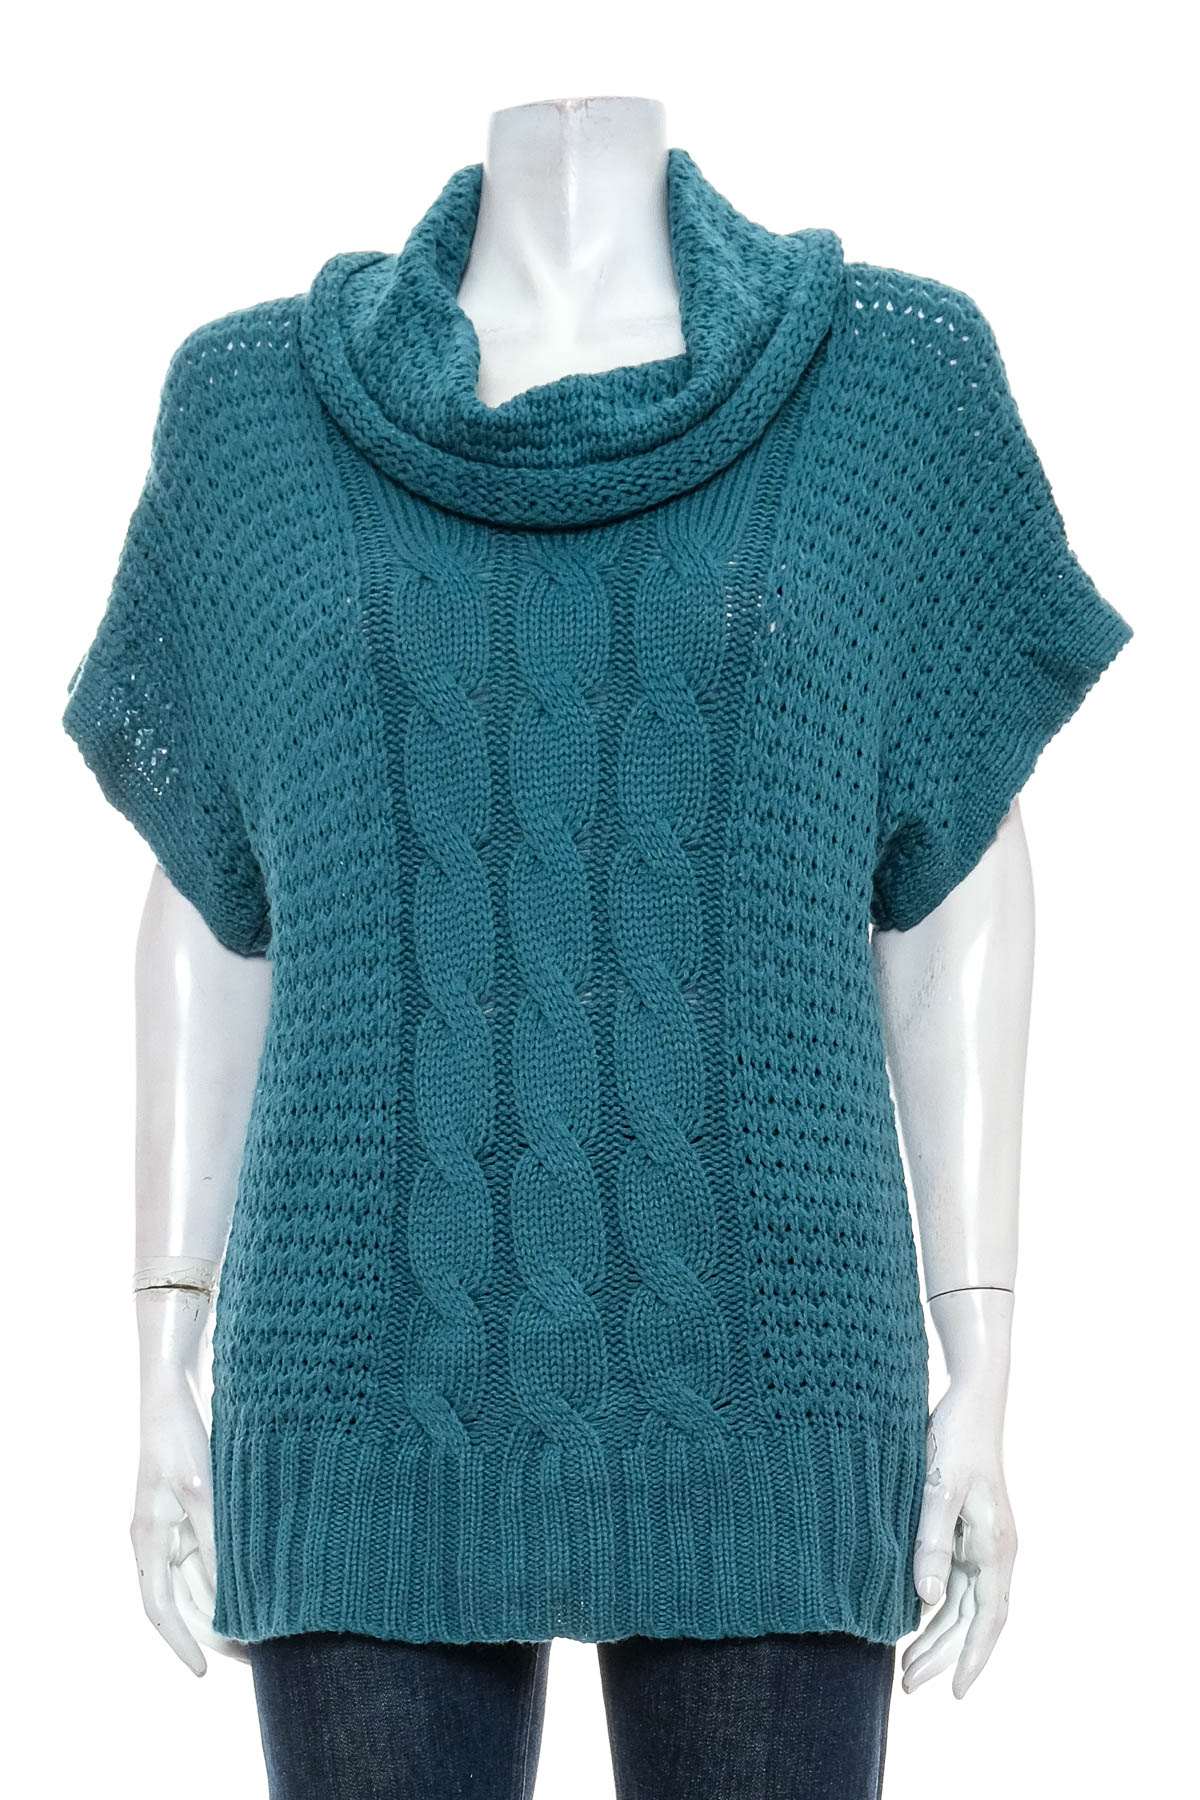 Women's sweater - Gina Laura - 0